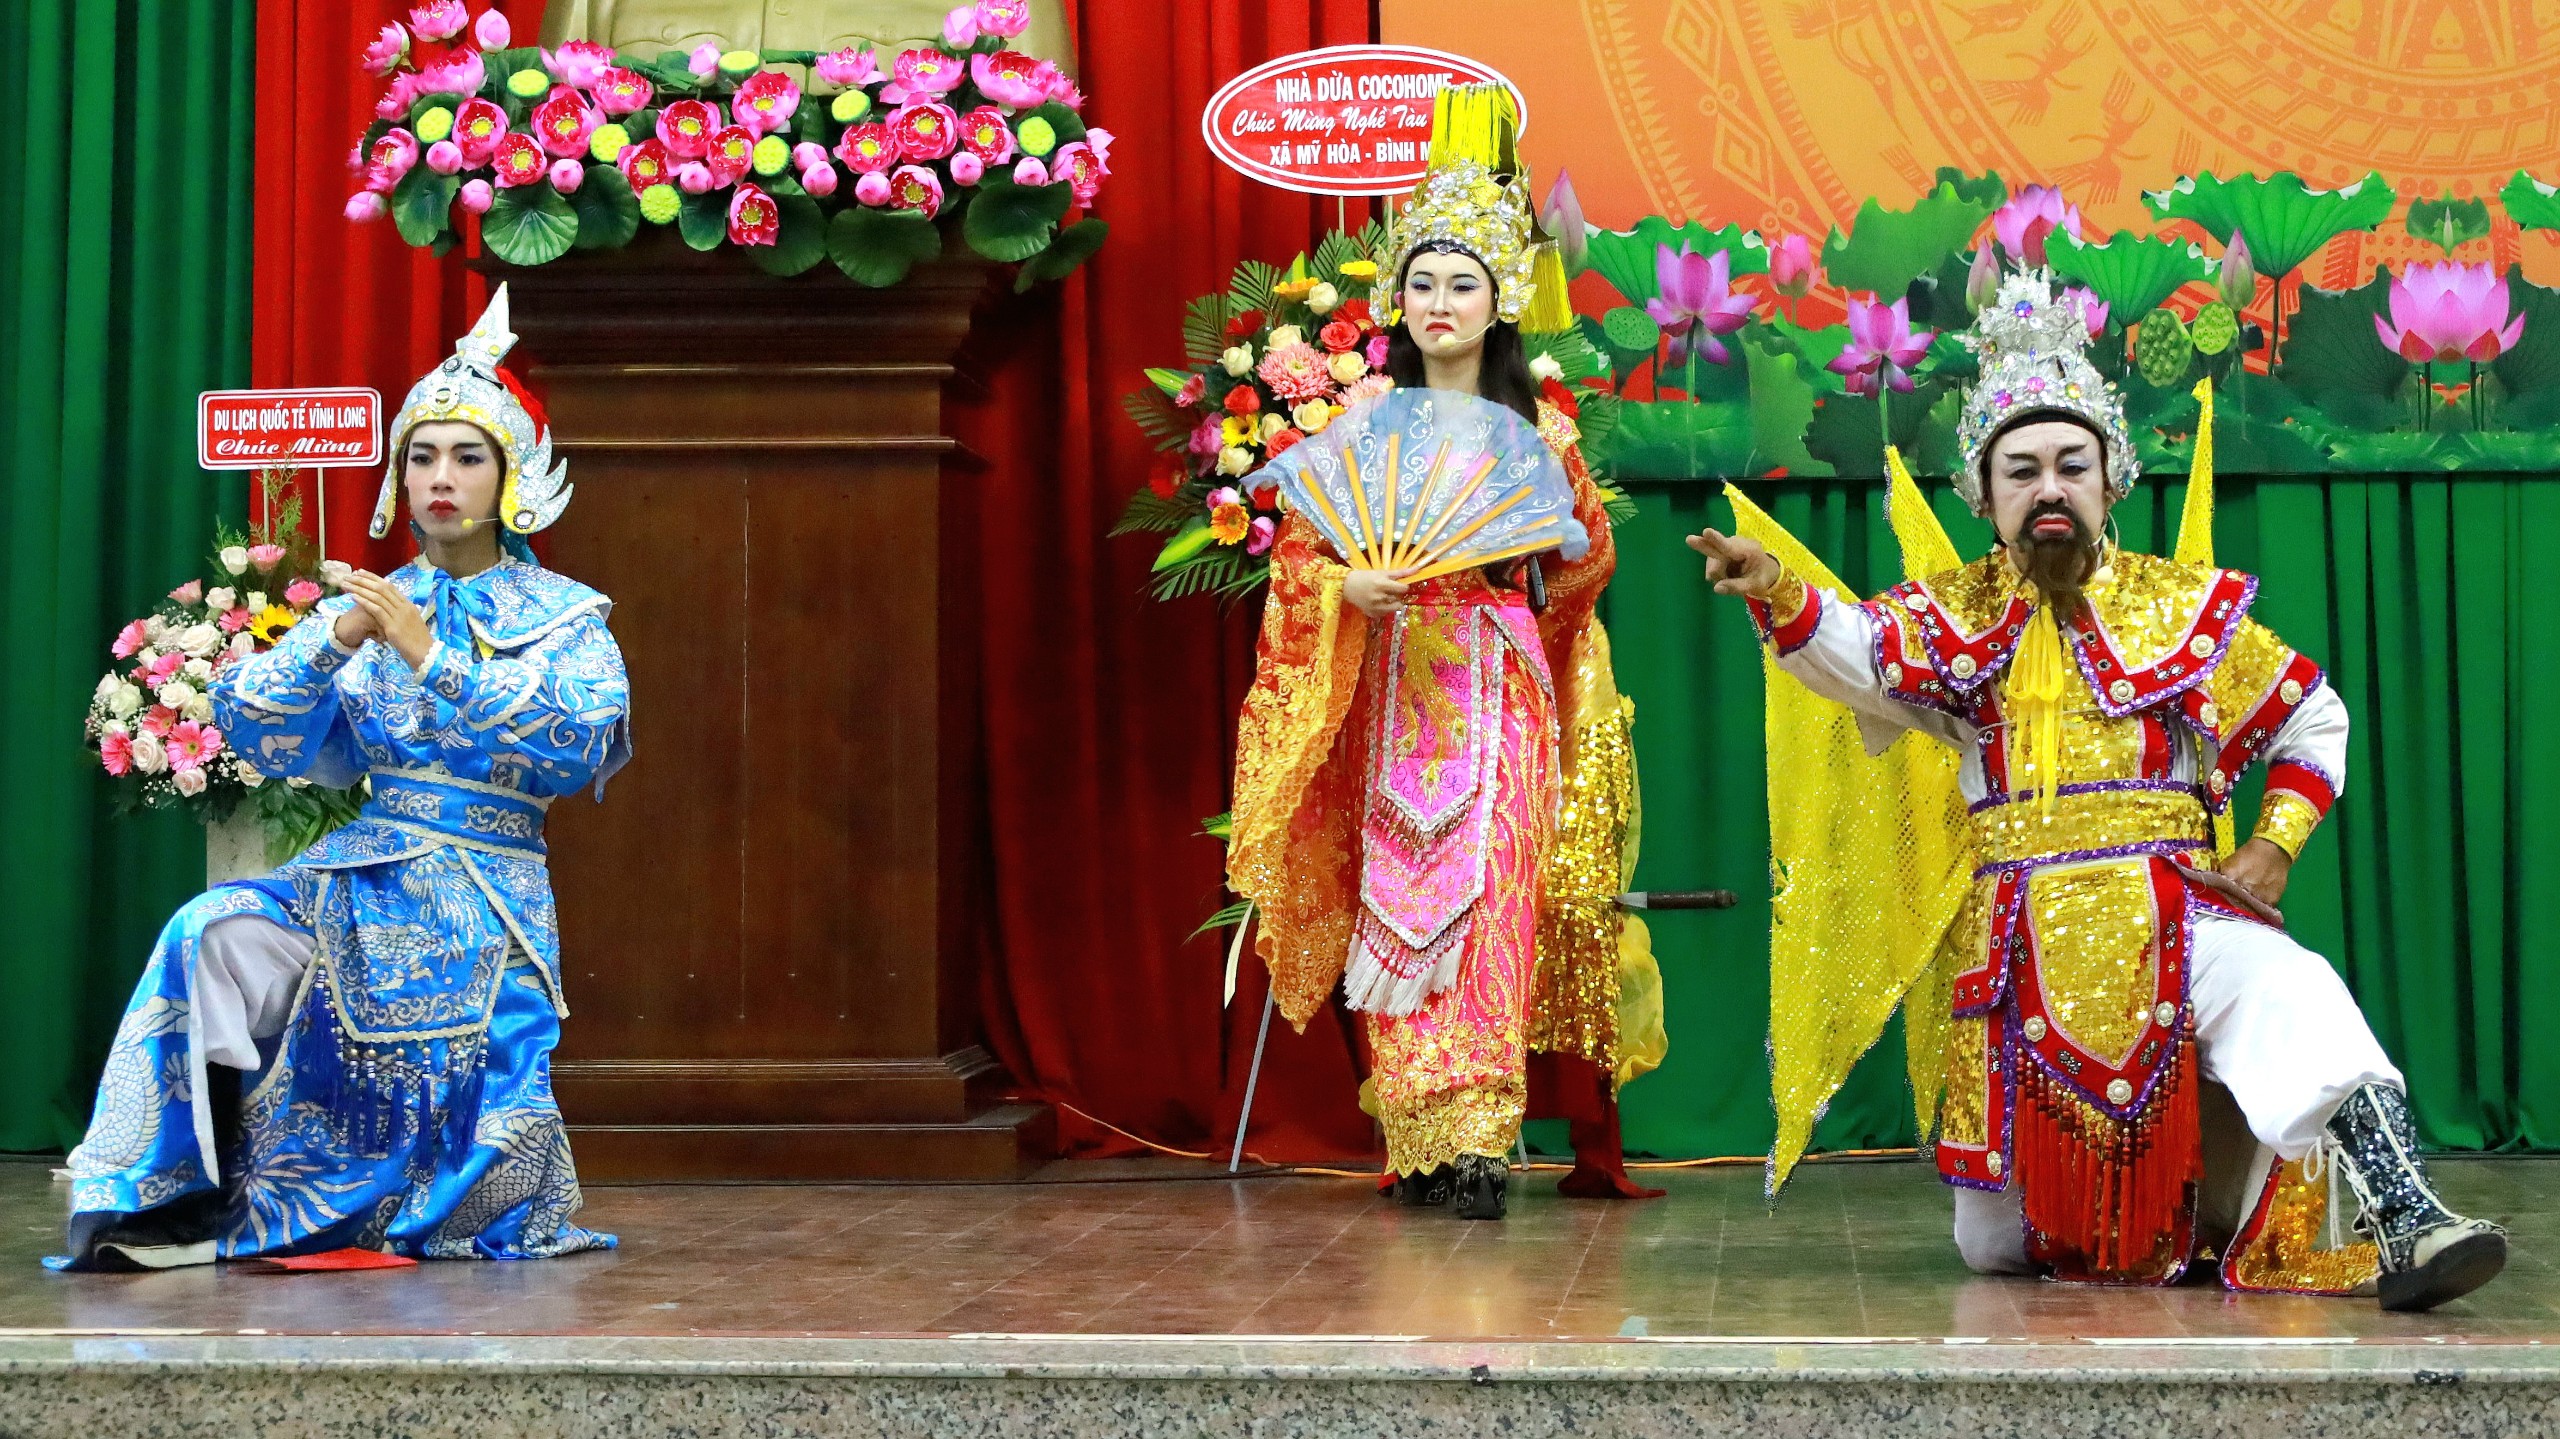 Nghệ nhân Vũ Linh Tâm (bìa phải) nghệ nhân hát bội tiêu biểu của tỉnh Vĩnh Long hiện nay và cháu gái trình diễn hát bội.